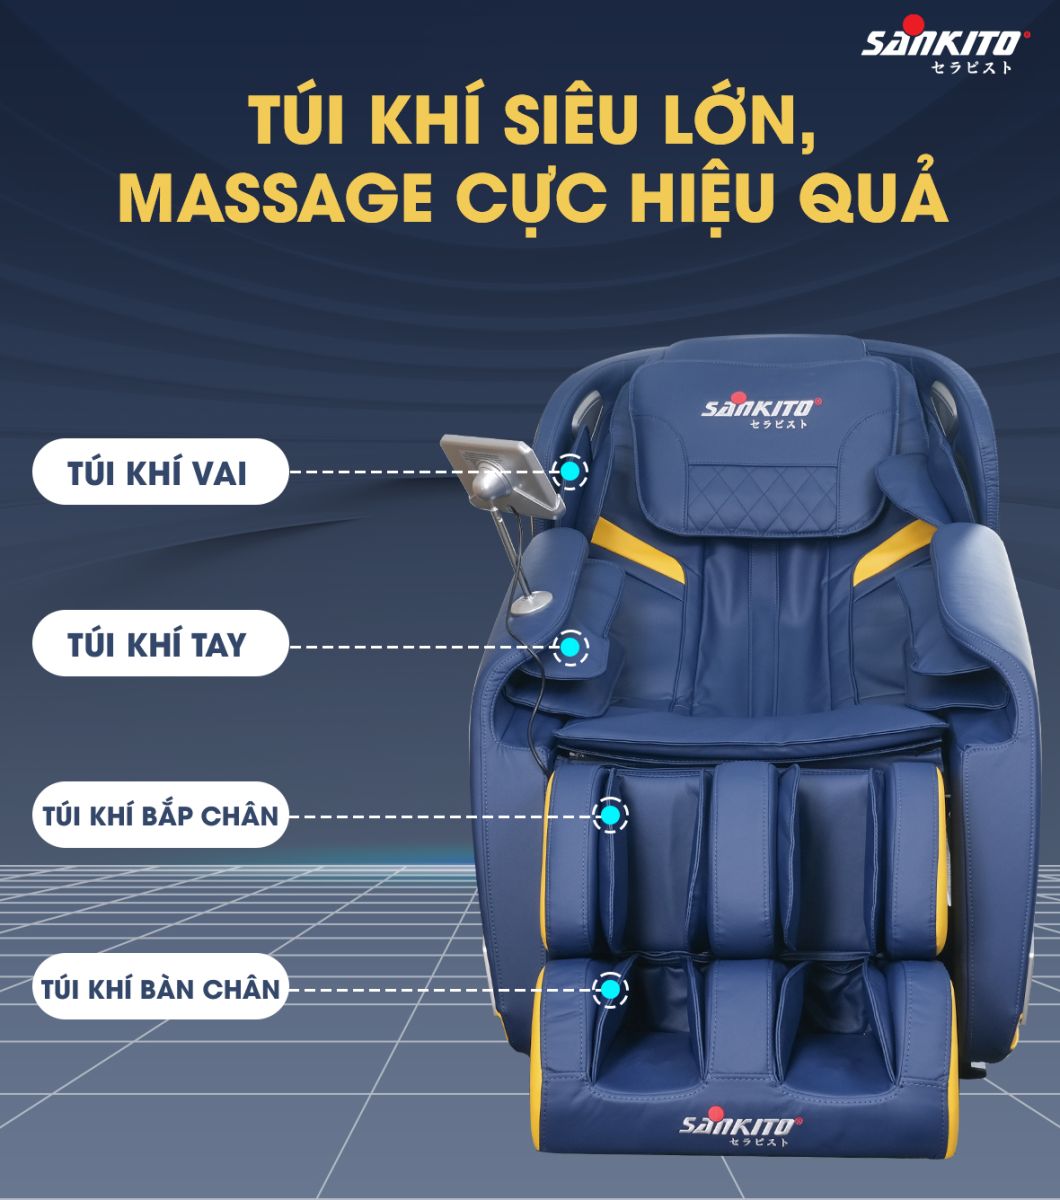 Ghế massage giảm nhức mỏi nhờ hệ thống túi khí trải dài khắp cơ thể